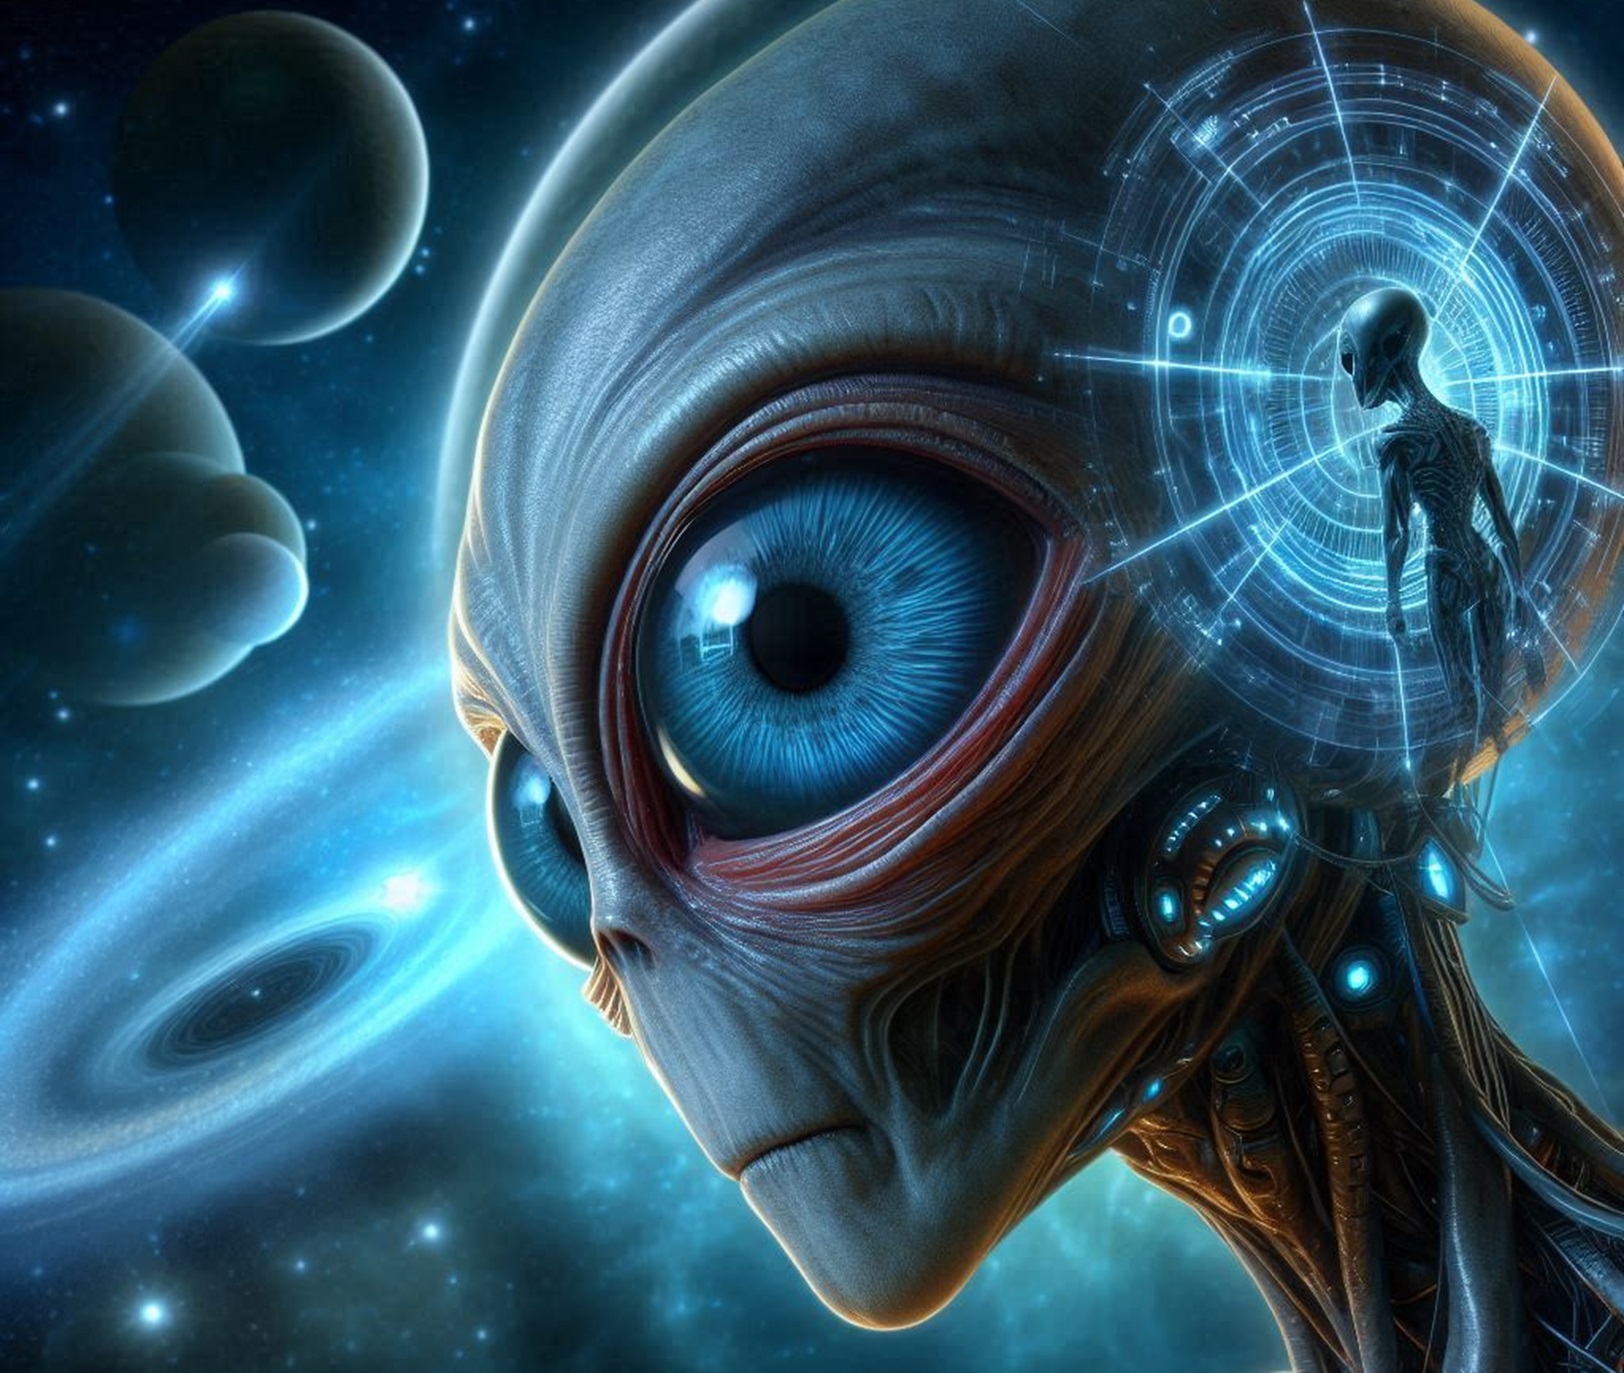 Un extraterrestre ressemble-t-il vraiment à cette image d'artiste ? © 2024 Microsoft Corporation